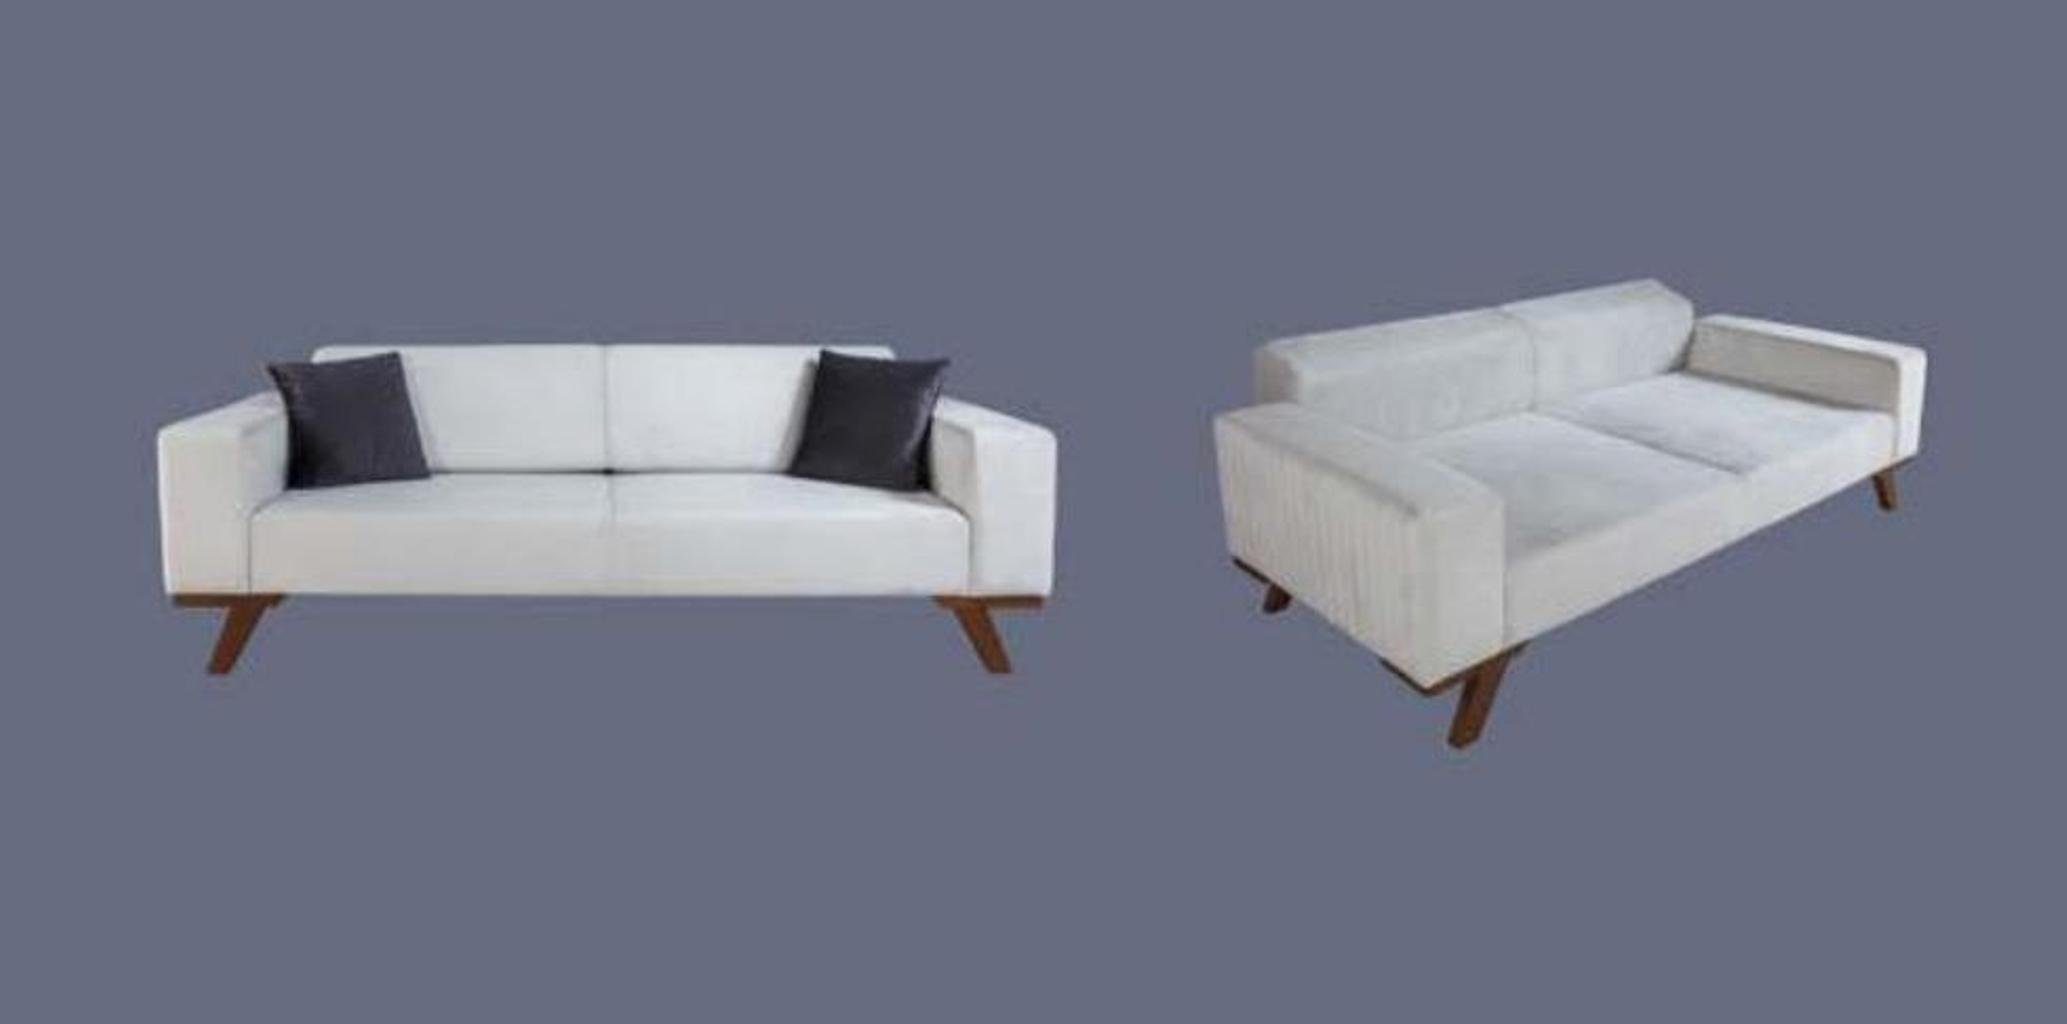 JVmoebel Sofa Sofas Dreisitzer Möbel, Europe Modern Polster Couchen Made Couch Sofa in